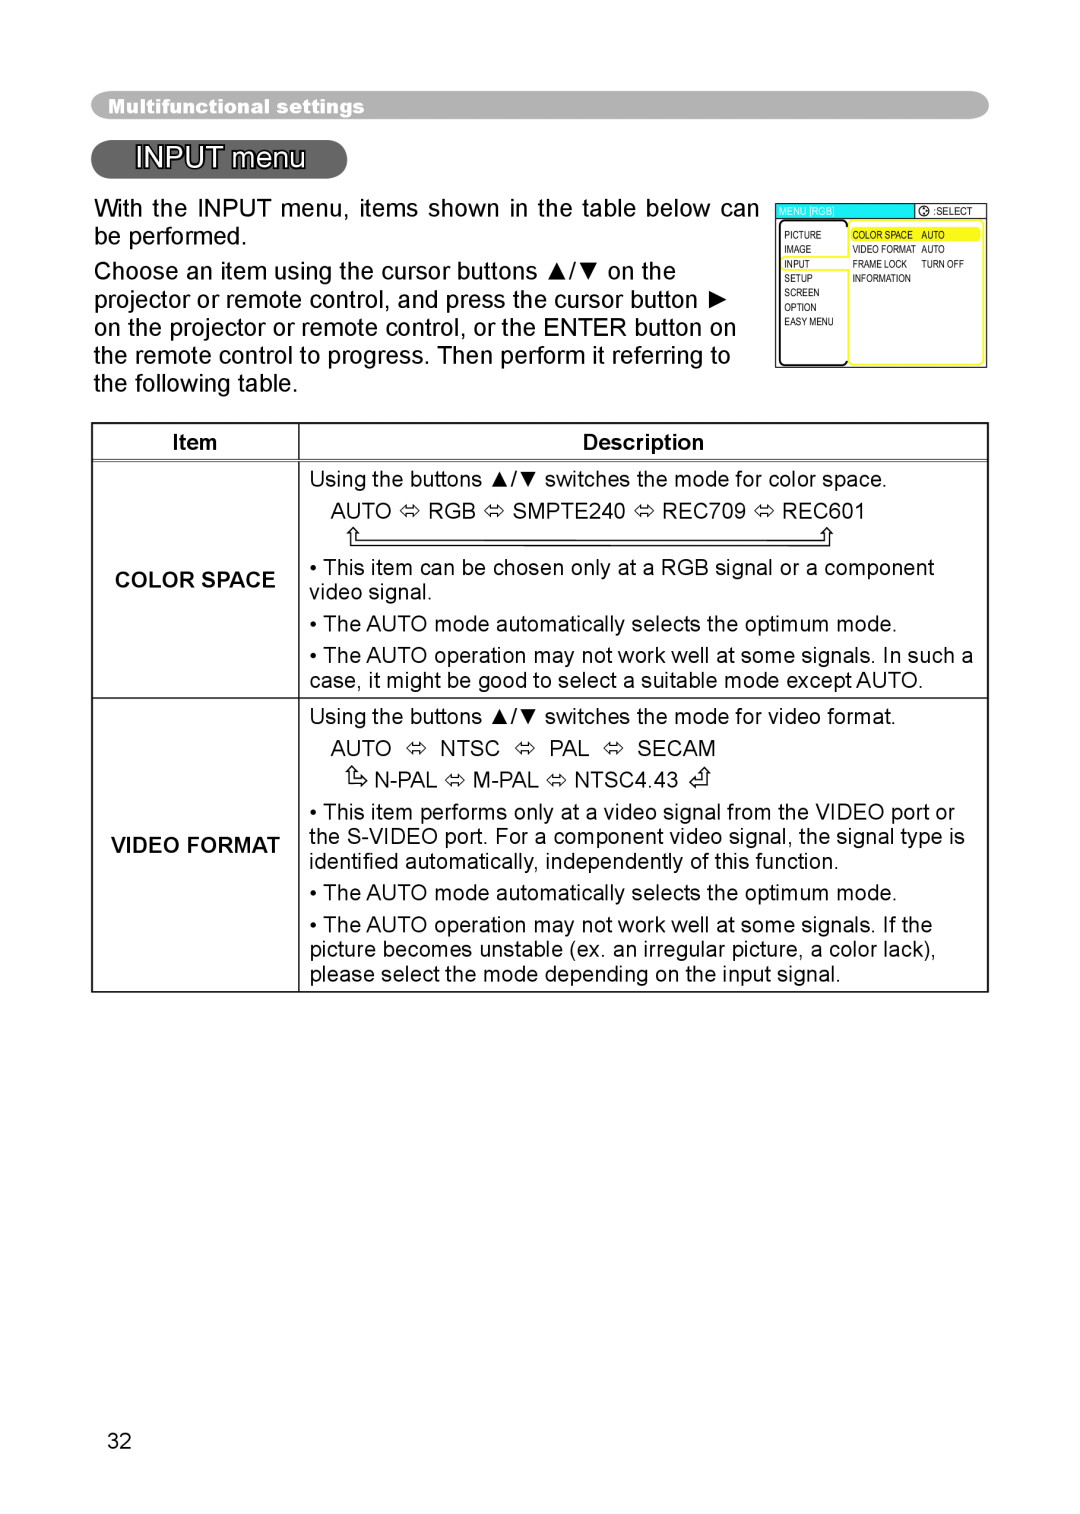 3M S15 manual INPUT menu, Color Space Video Format, Description 